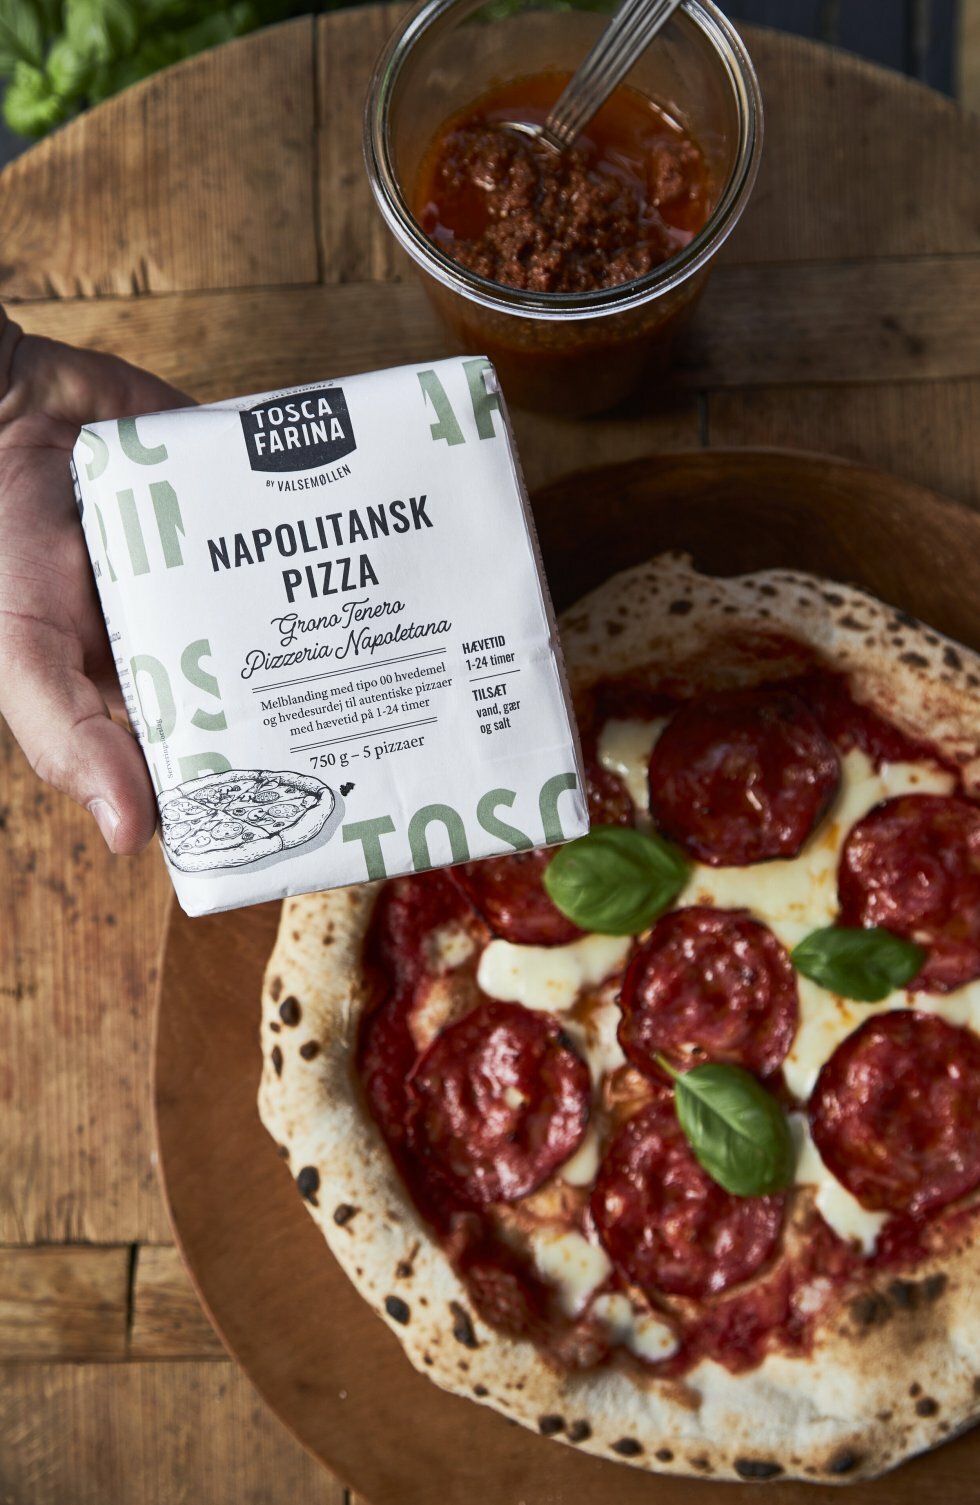 Tosca Farina: Ny melserie gør det nemmere at bage verdensklasse-pizza